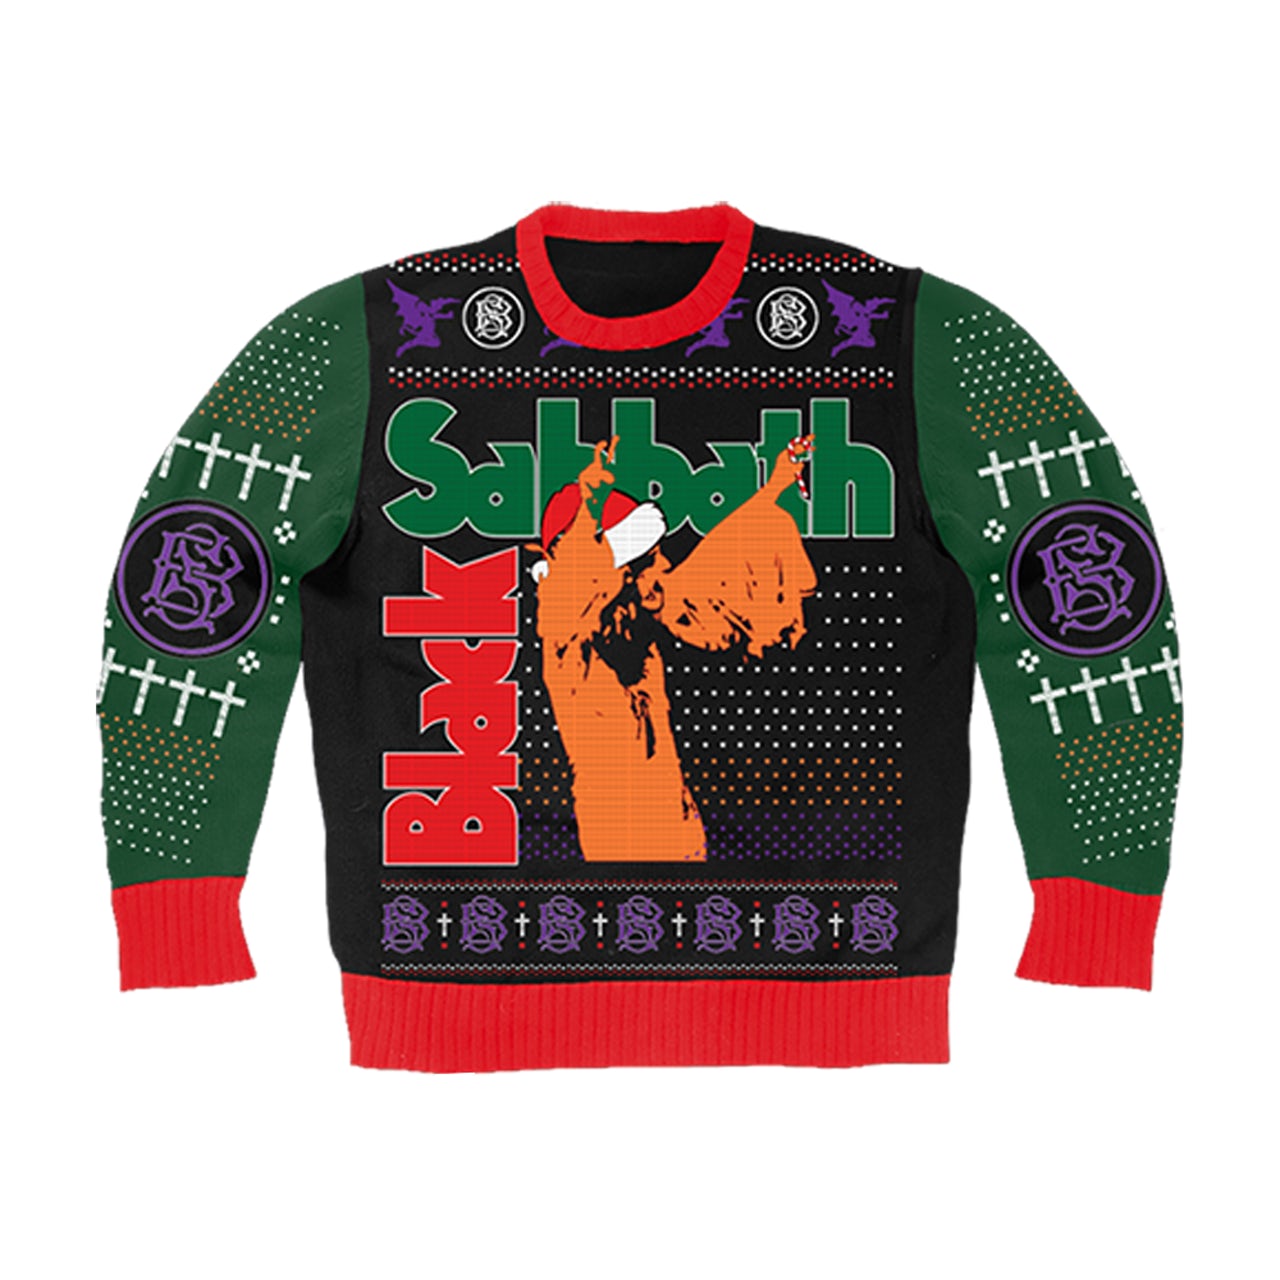 Navidad rockera: Checa estos 10 suéteres navideños de tus bandas favoritas